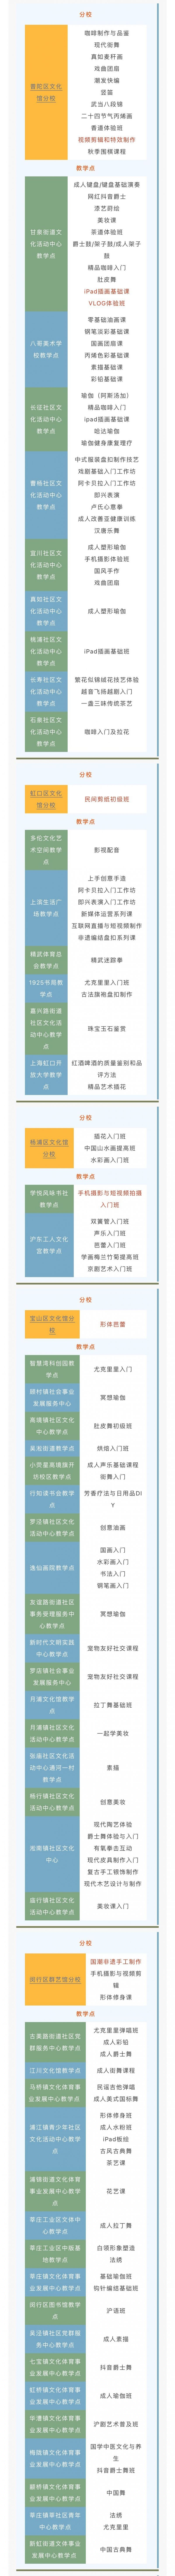 上海市民艺术学校 2023上海市民艺术夜校课程安排表